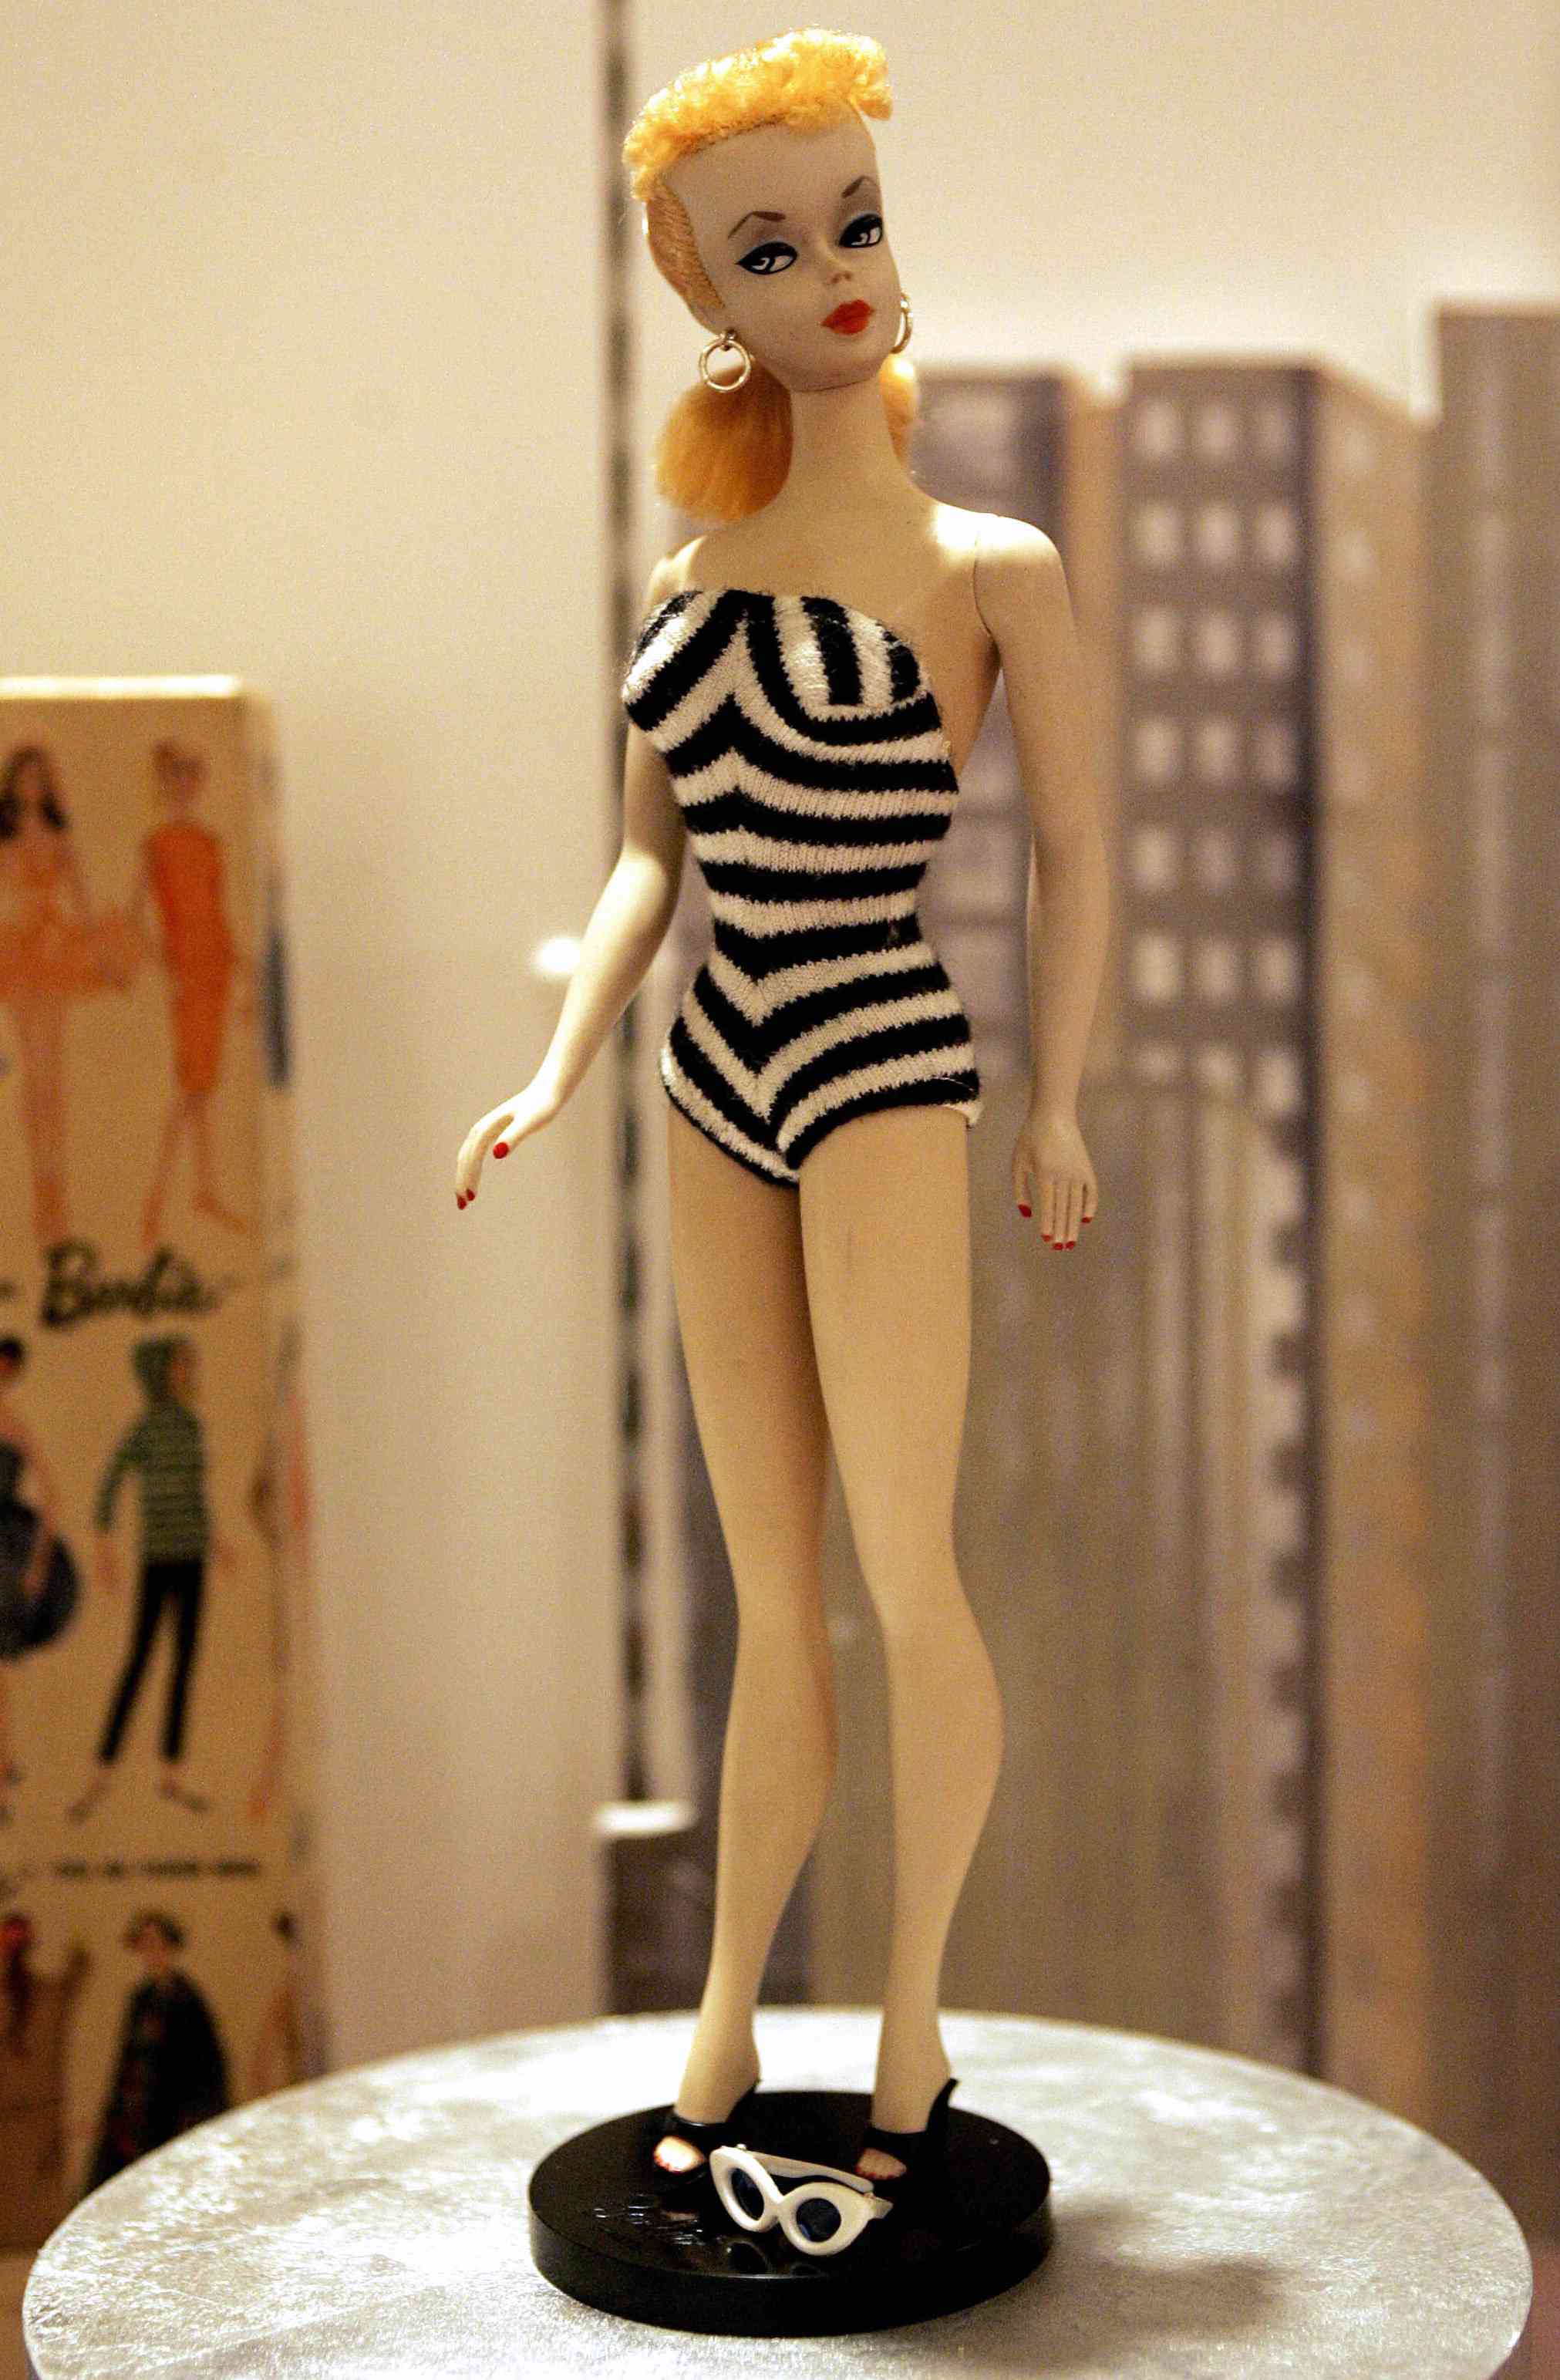 Barbie: ऐसे हुई थी बार्बी डॉल की शुरुआत, बेहद दिलचस्प है इस पहली वयस्क गुड़िया की कहानी